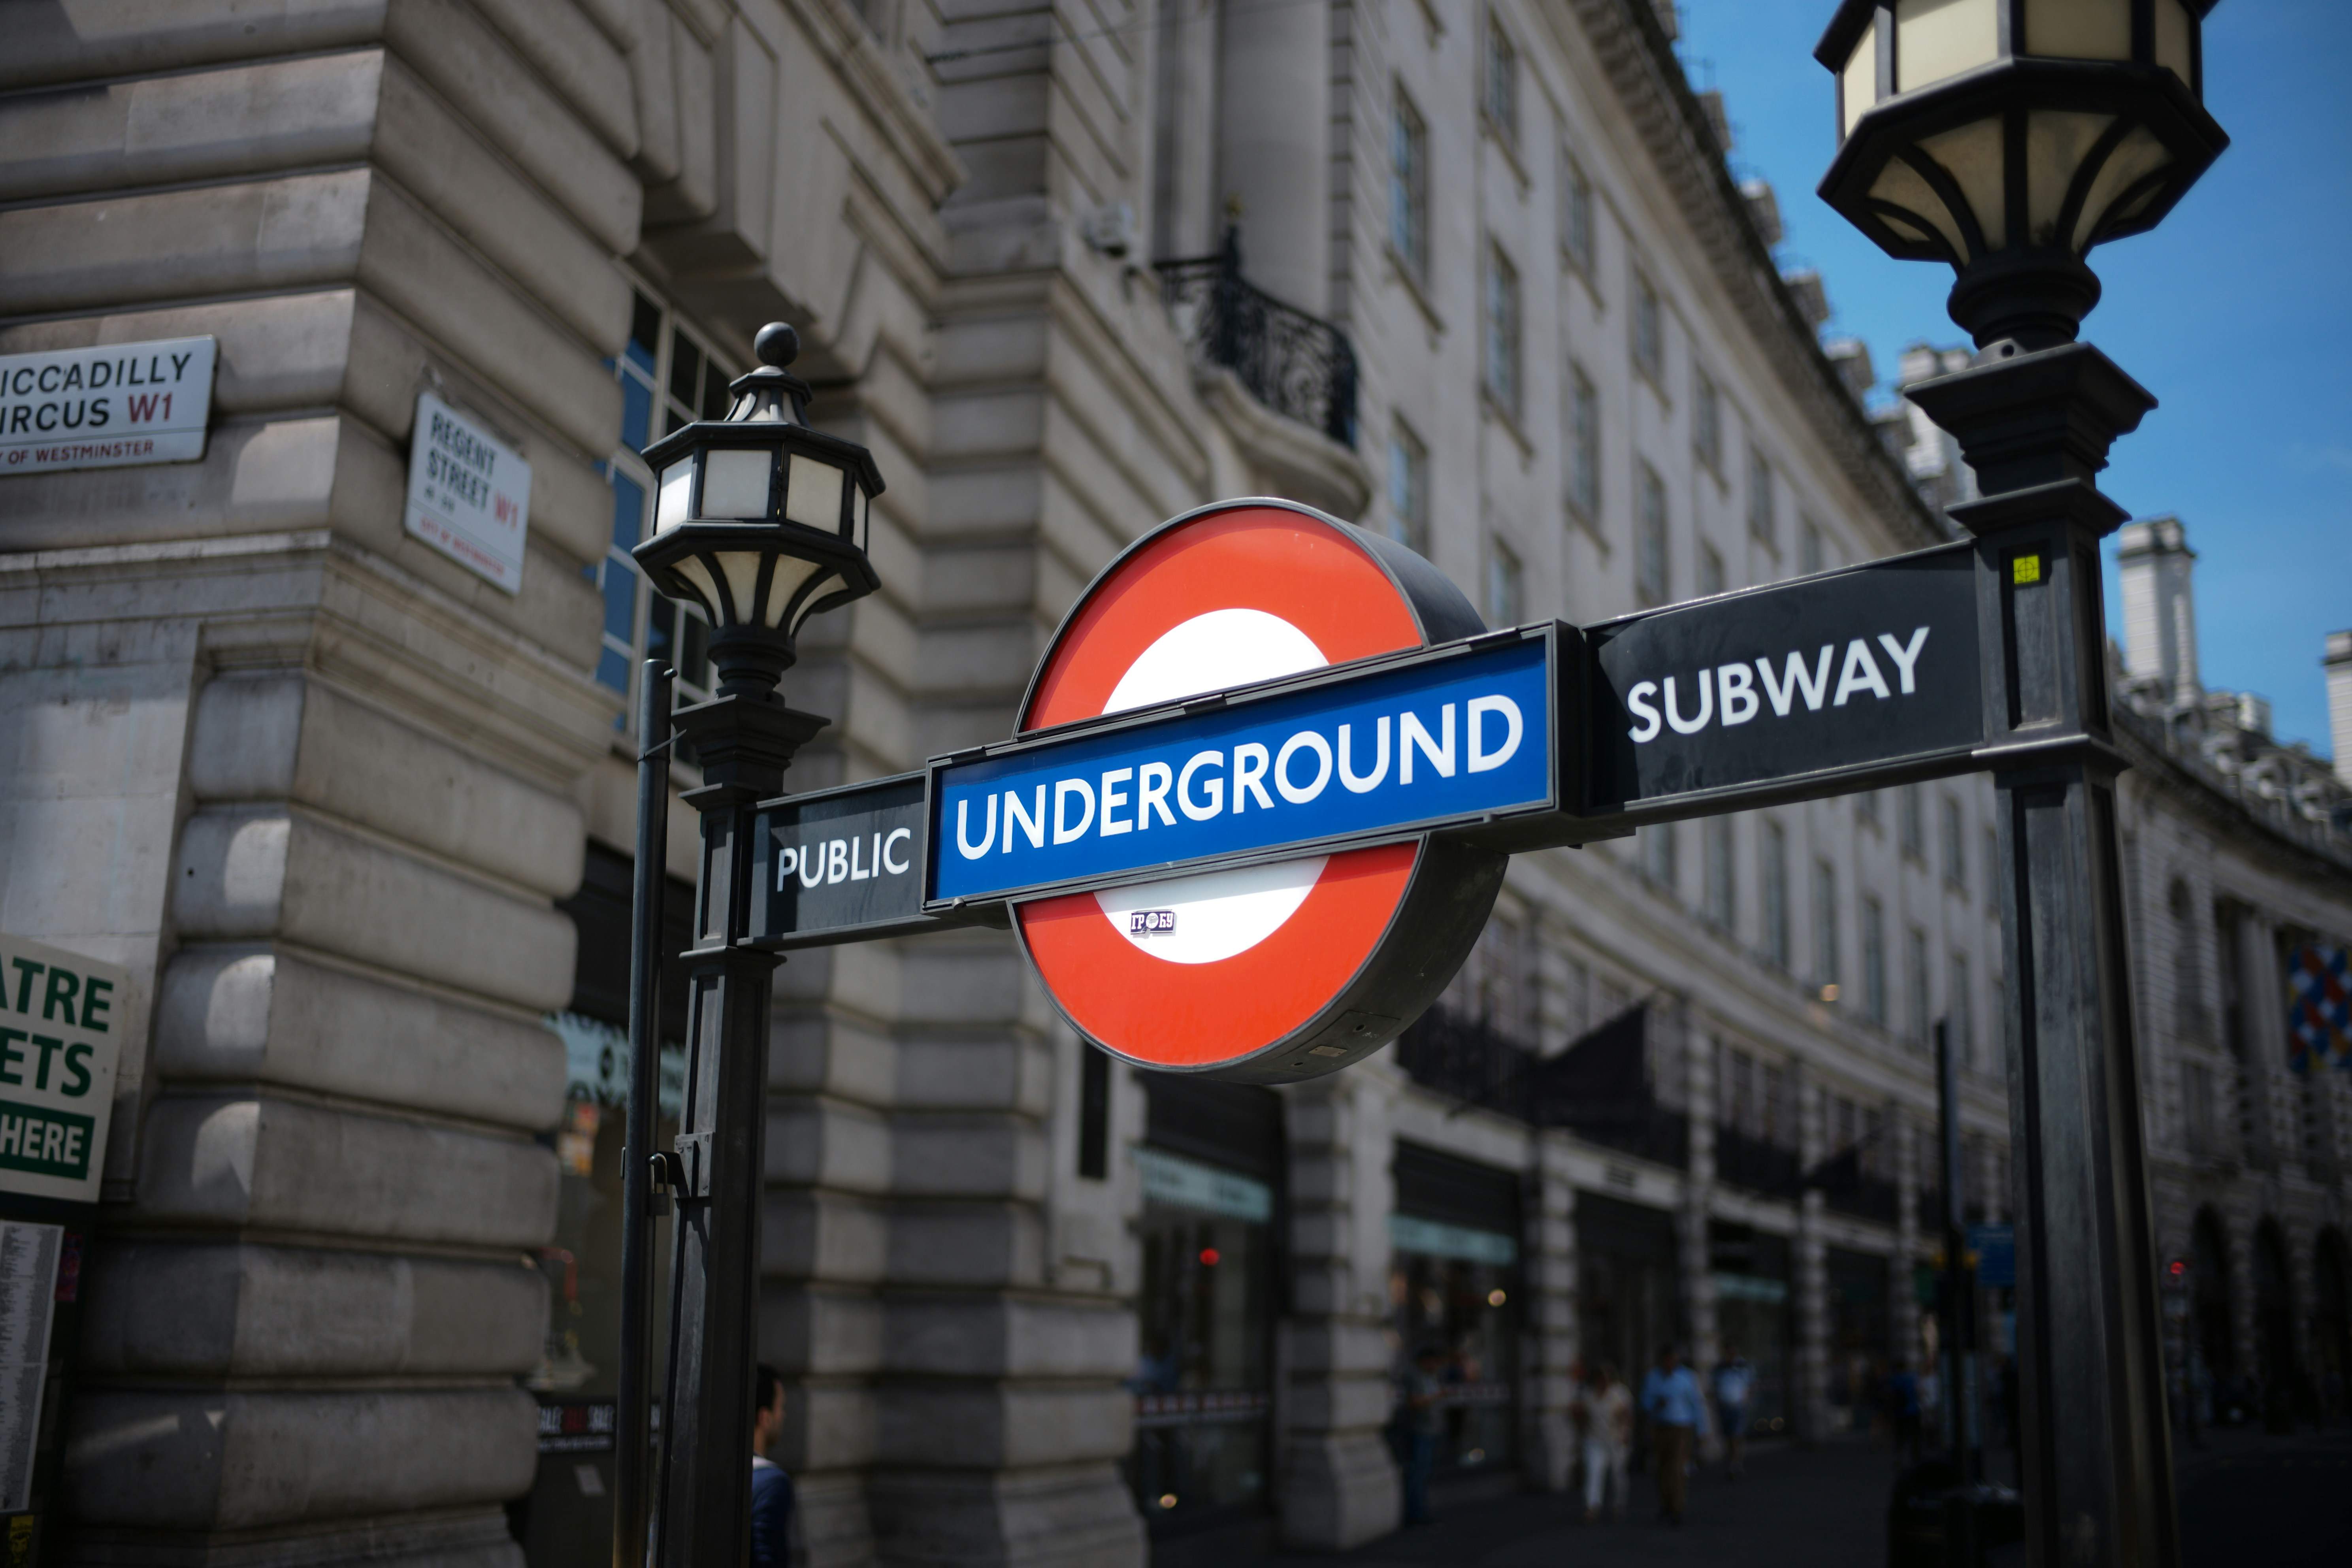 Càmeres amb AI operades per Amazon capten l'estat emocional dels viatgers del metro de Londres